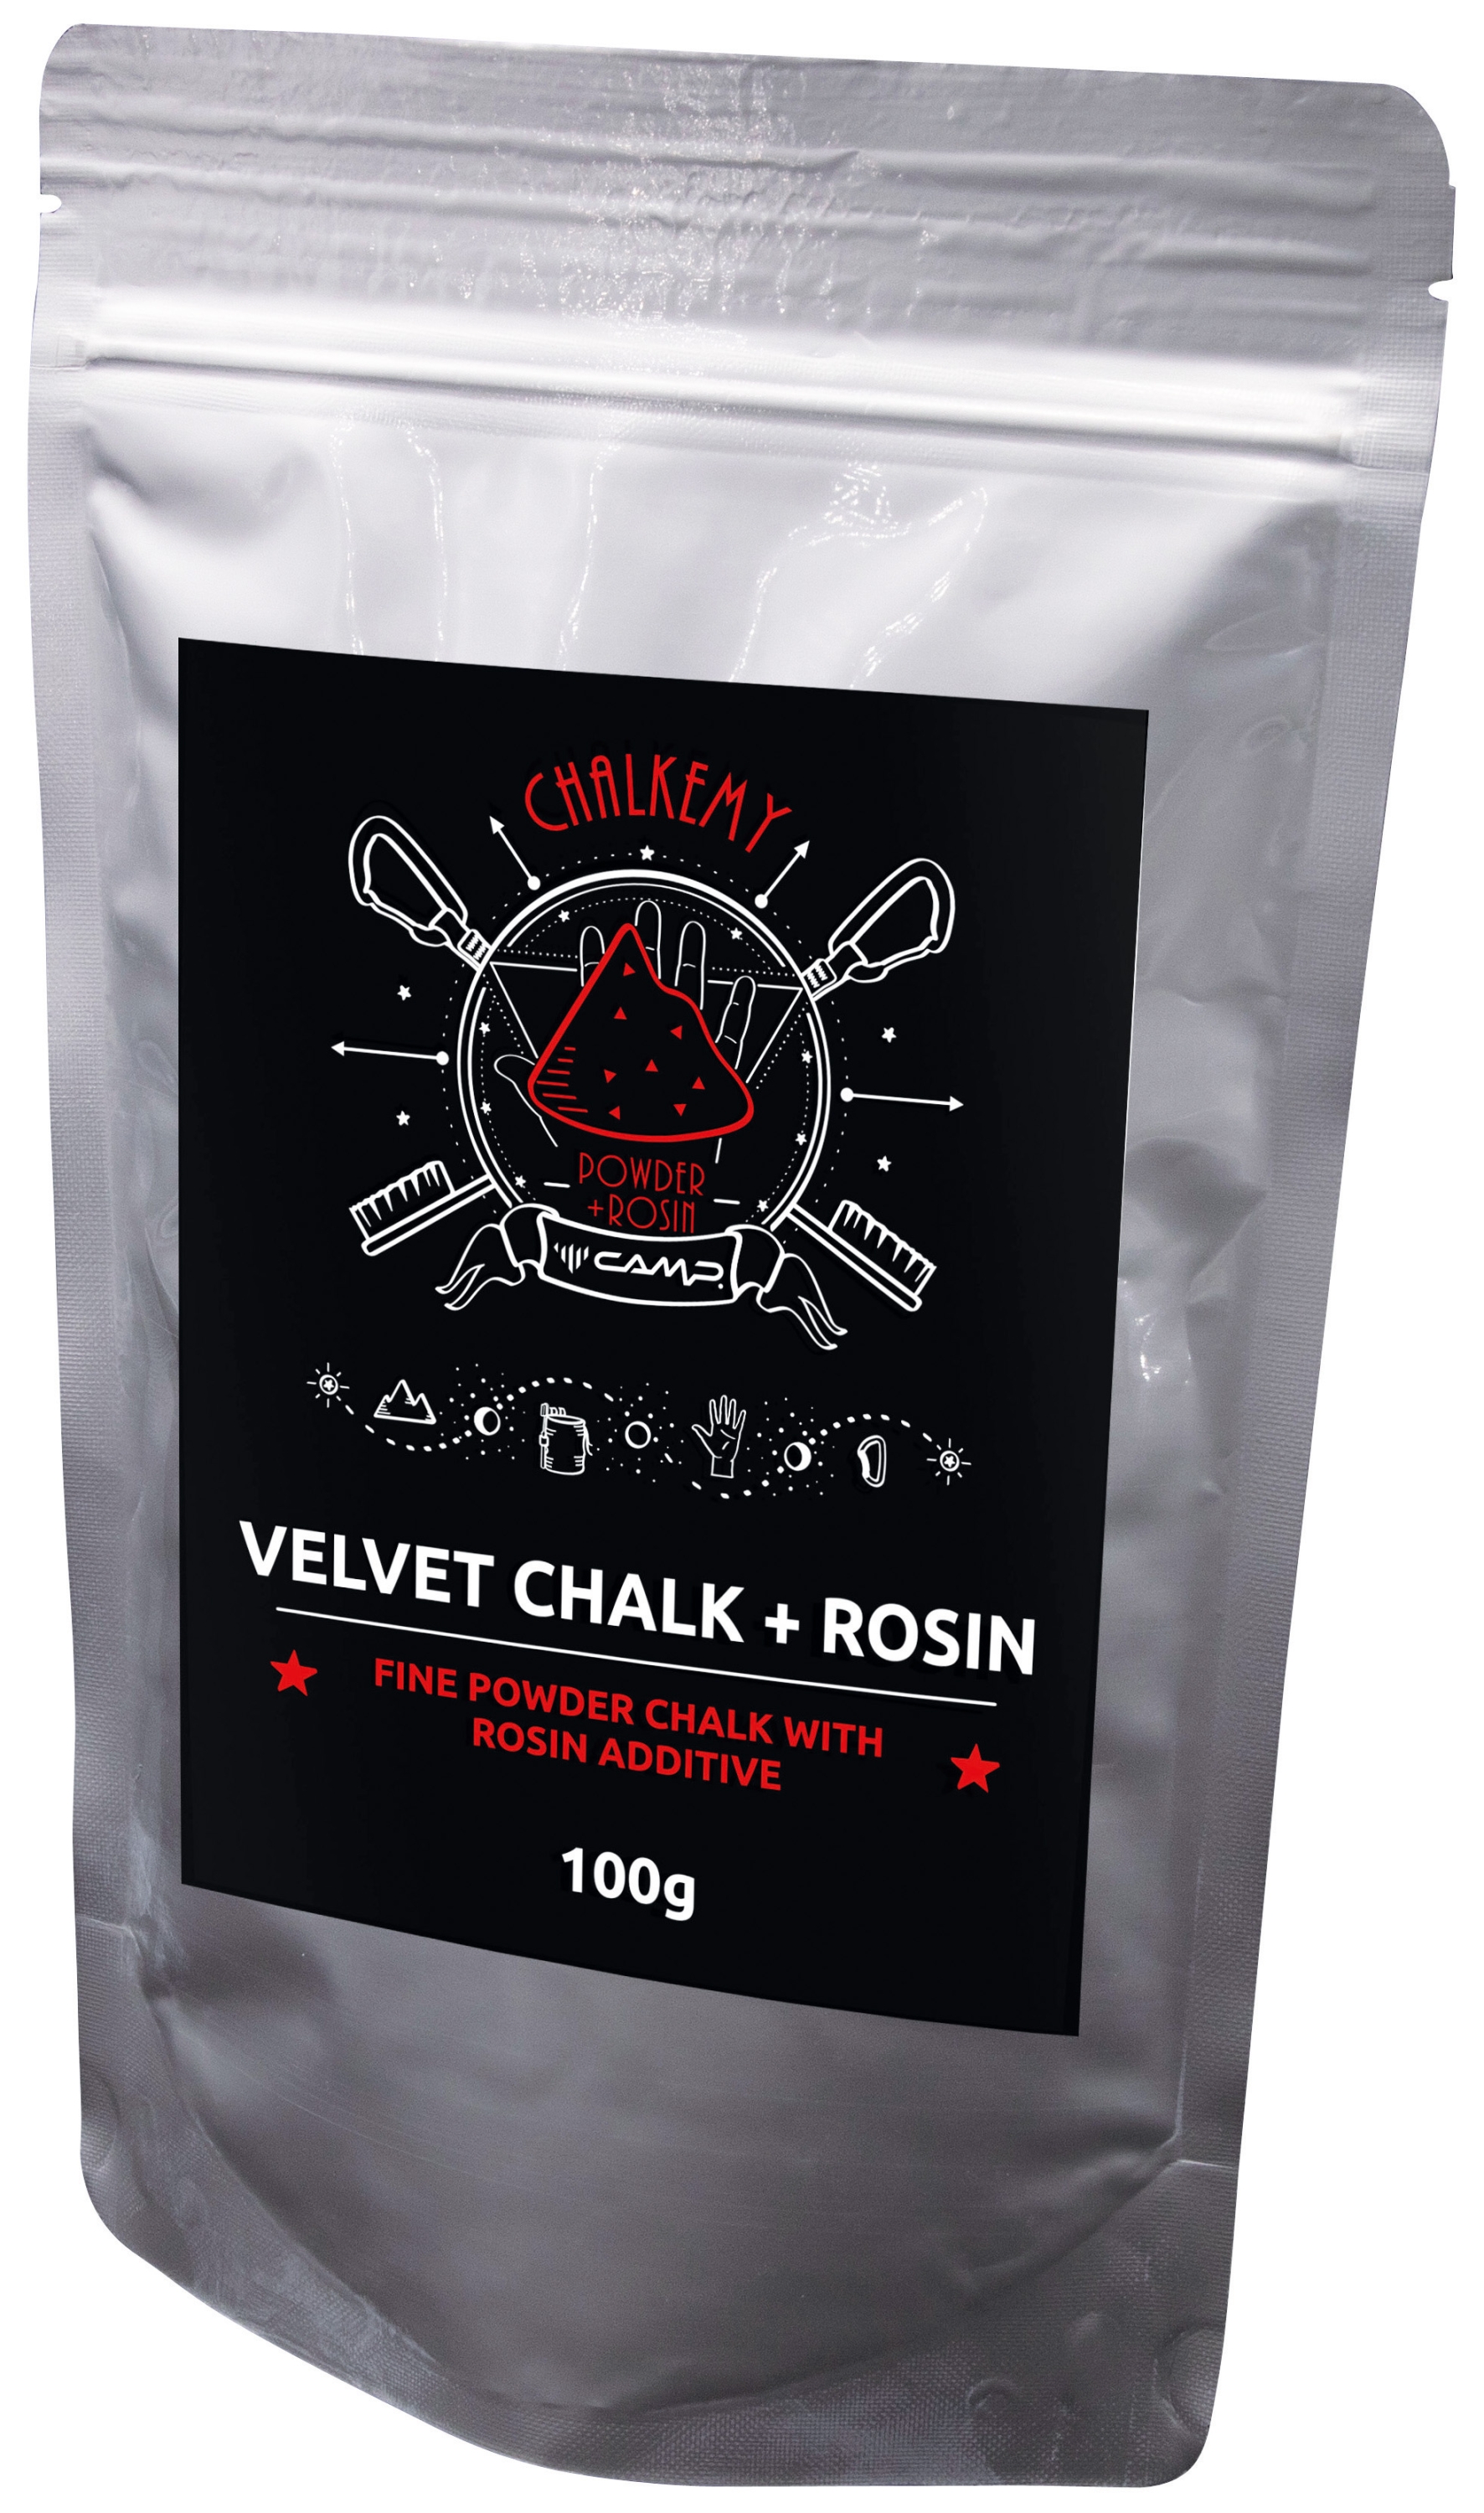 Velvet Chalk + Rosin 100g